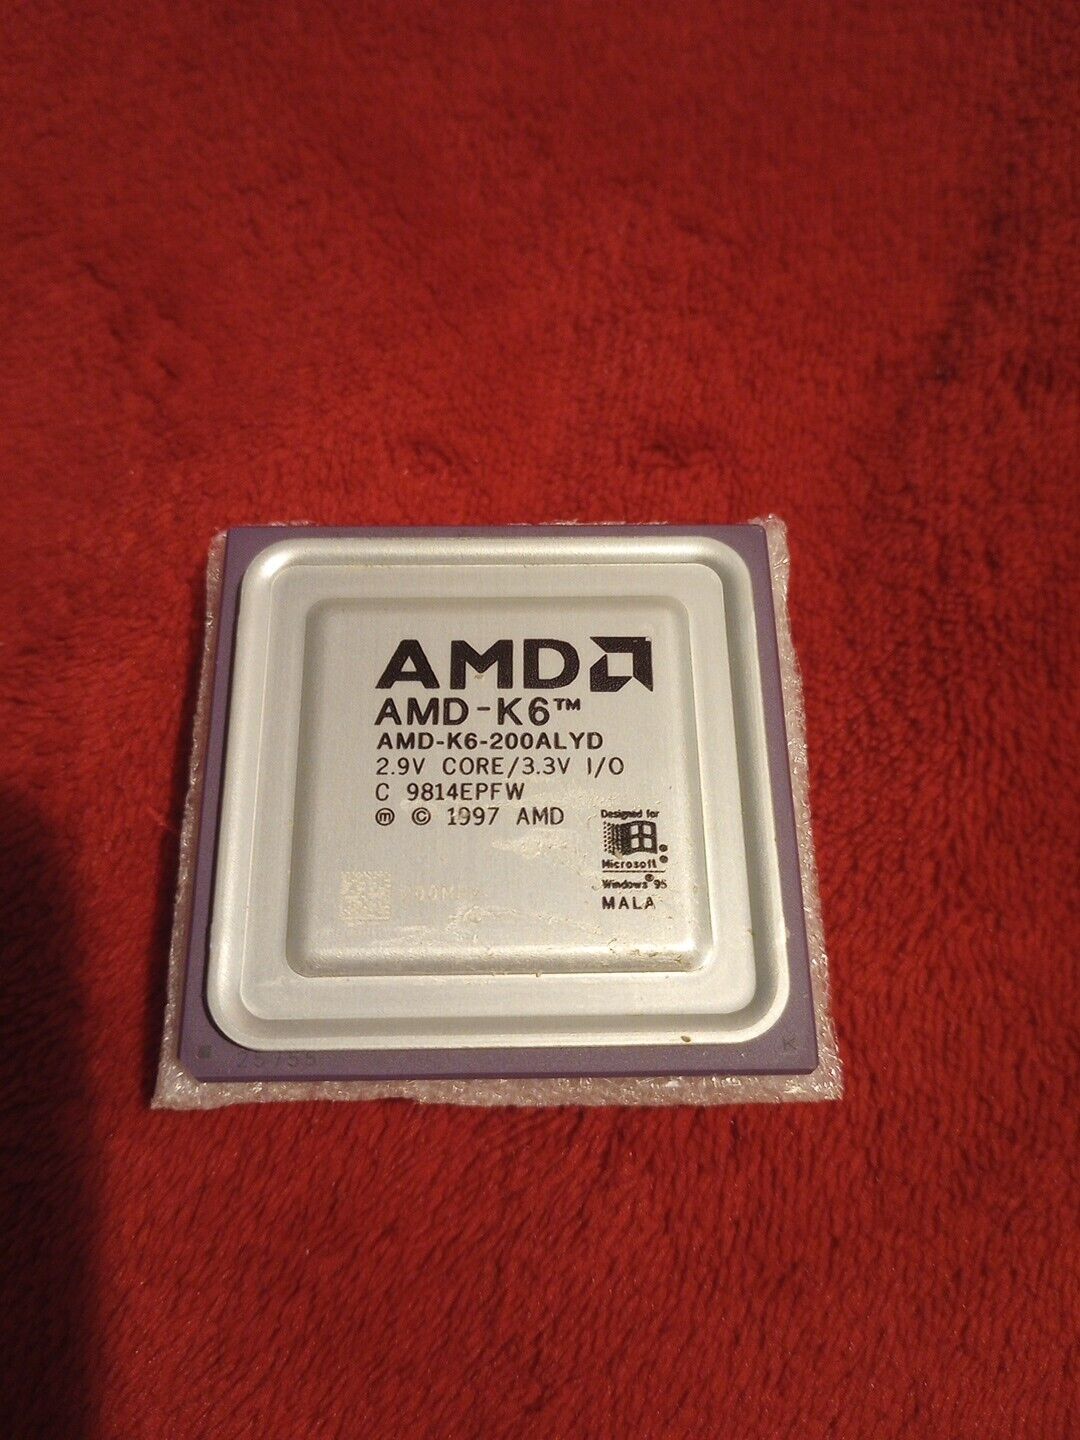 AMD 200mhz AMD-K6 200ALYD CPU Socket 7 (2.9v core 3.3v IO) 1997 C 9814EPFW